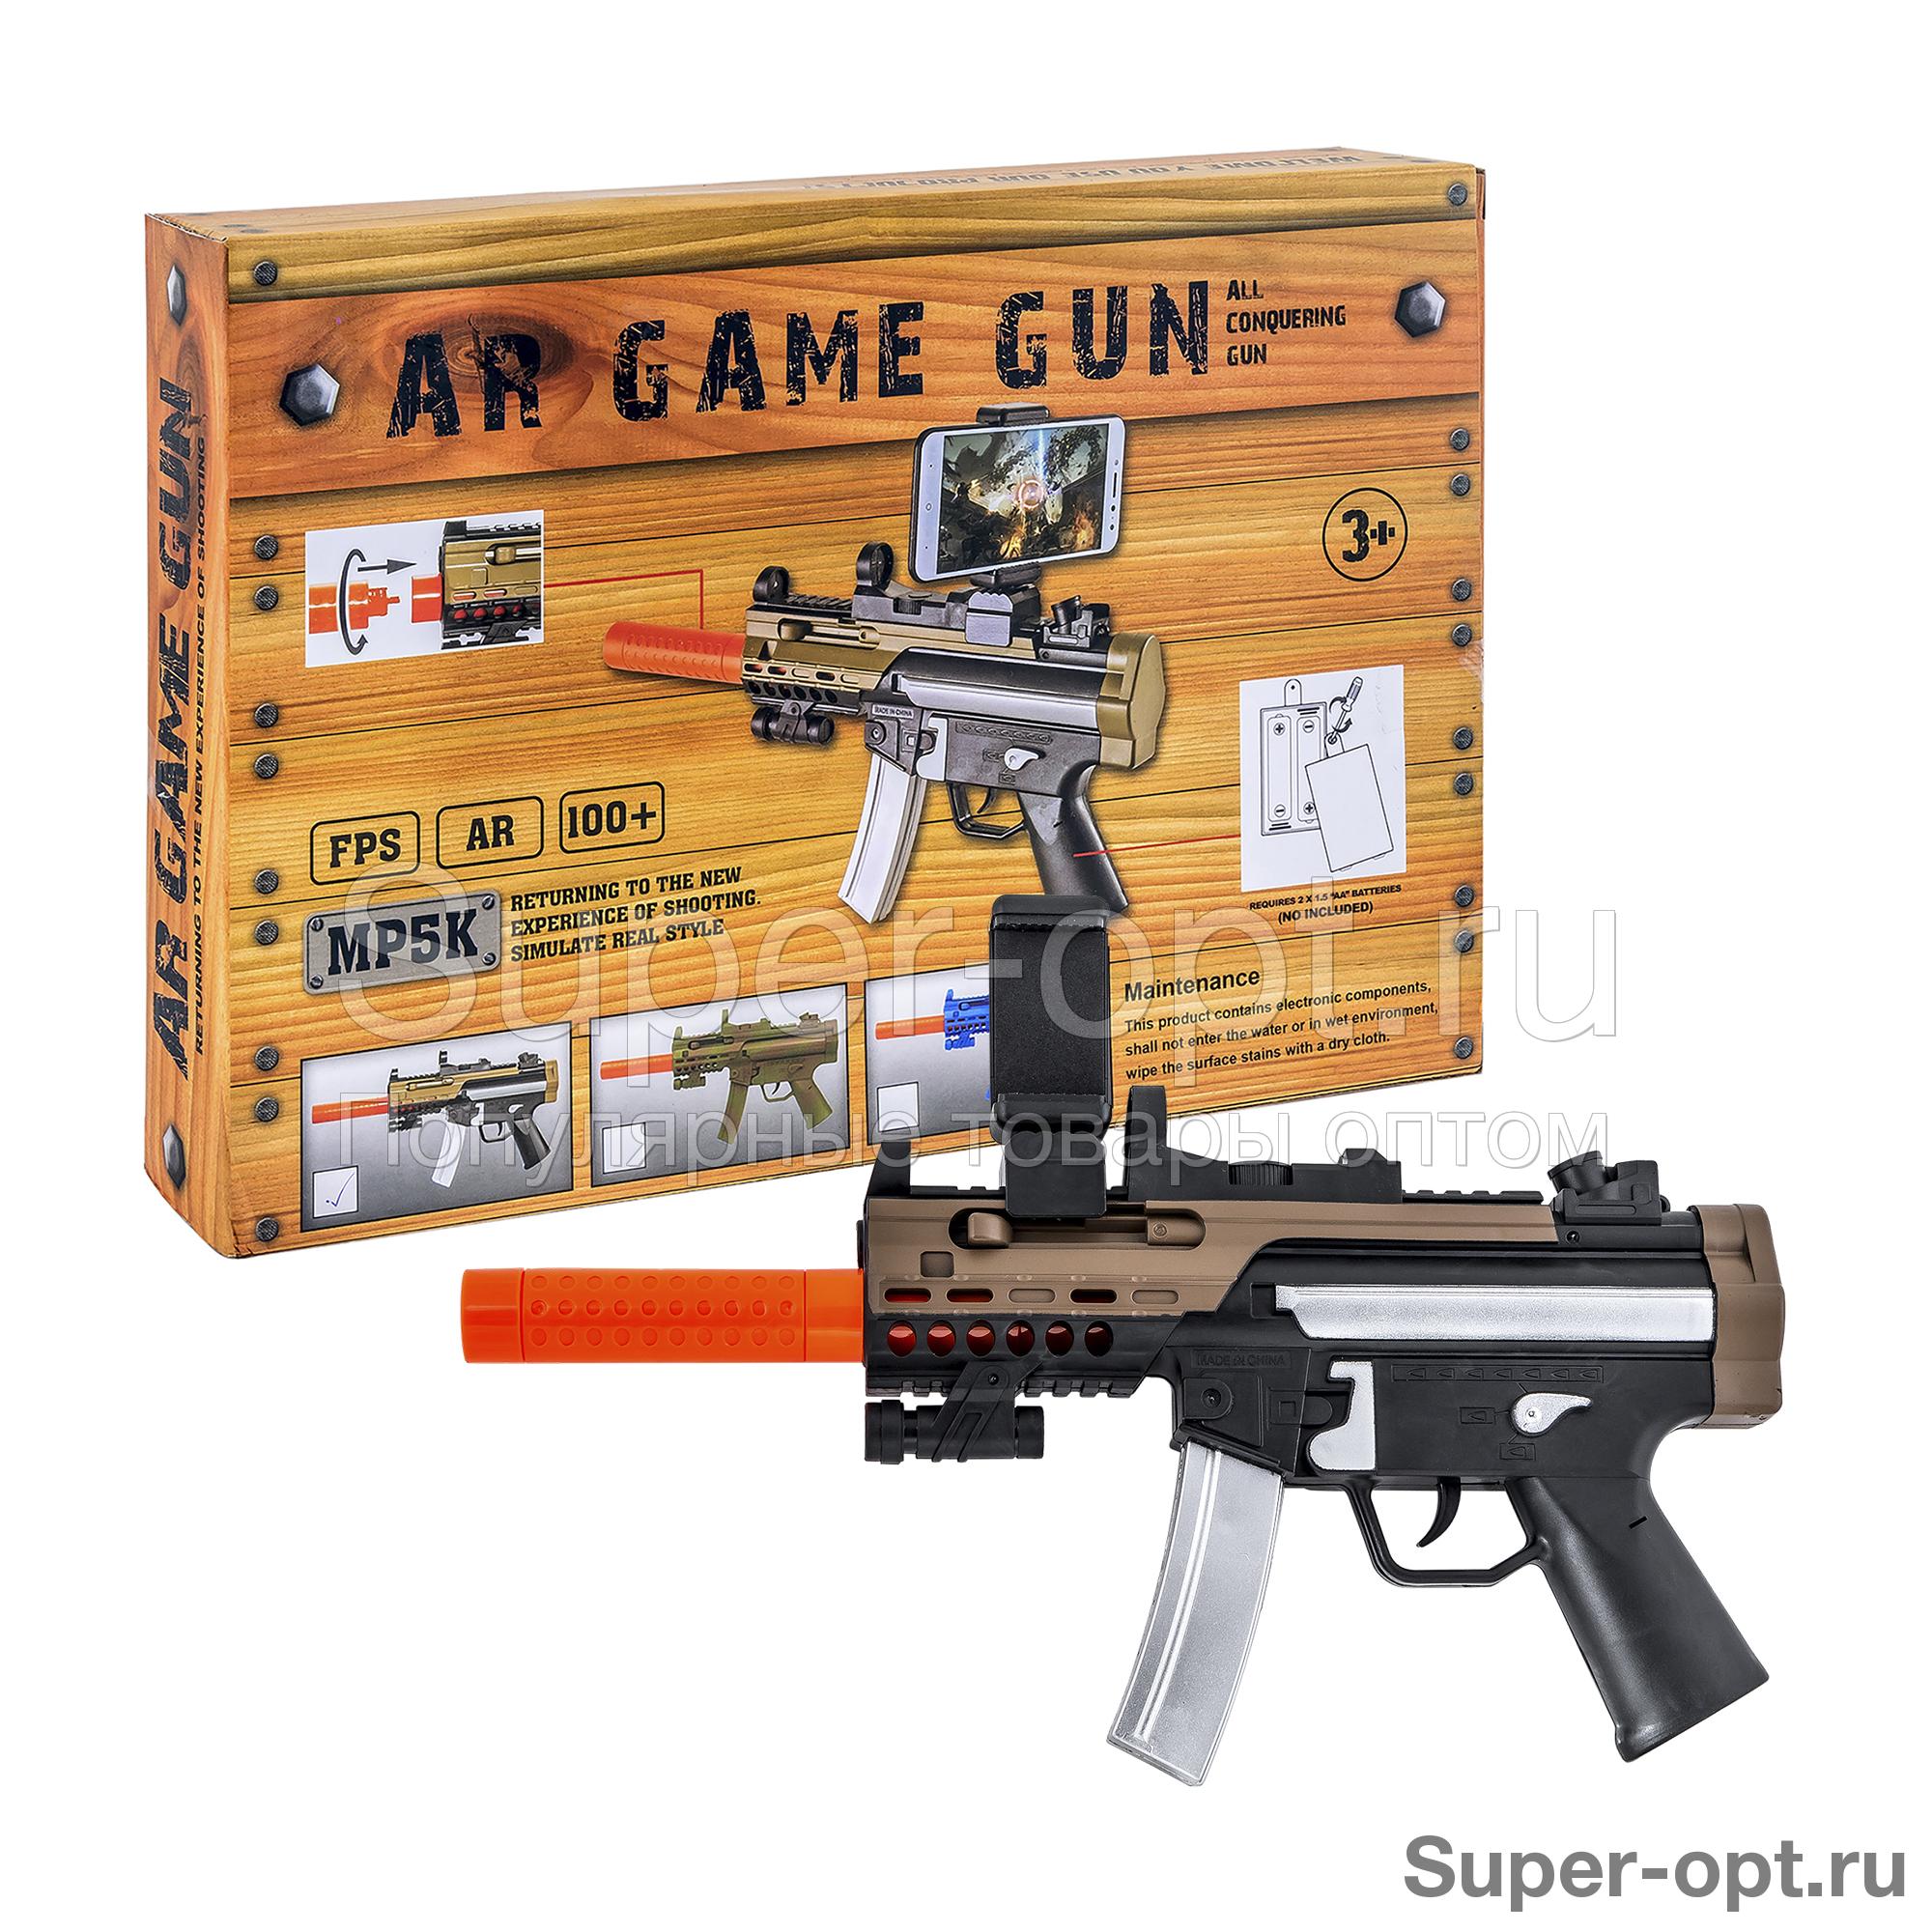 Автомат AR Game Gun для игр дополненной реальности